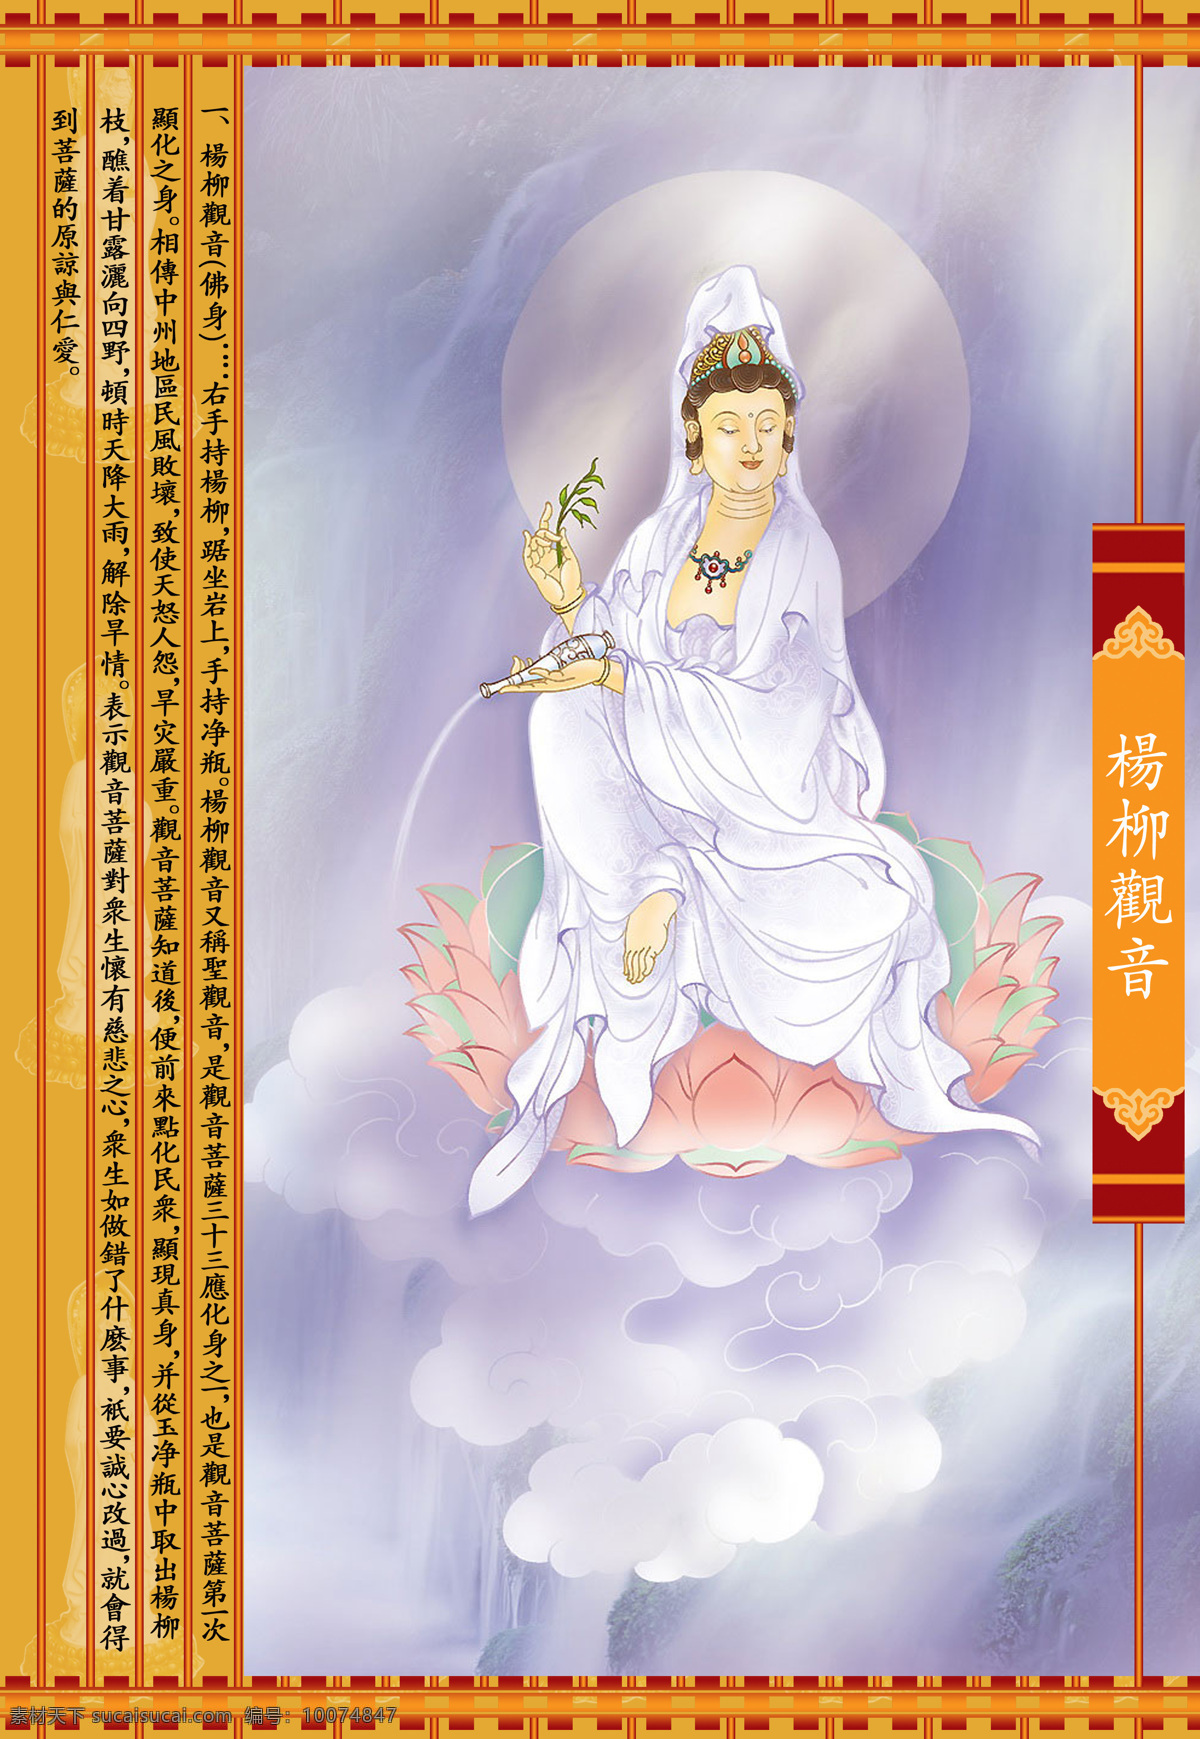 杨柳观音 设计素材 神祇图篇 民间美术 书画美术 白色